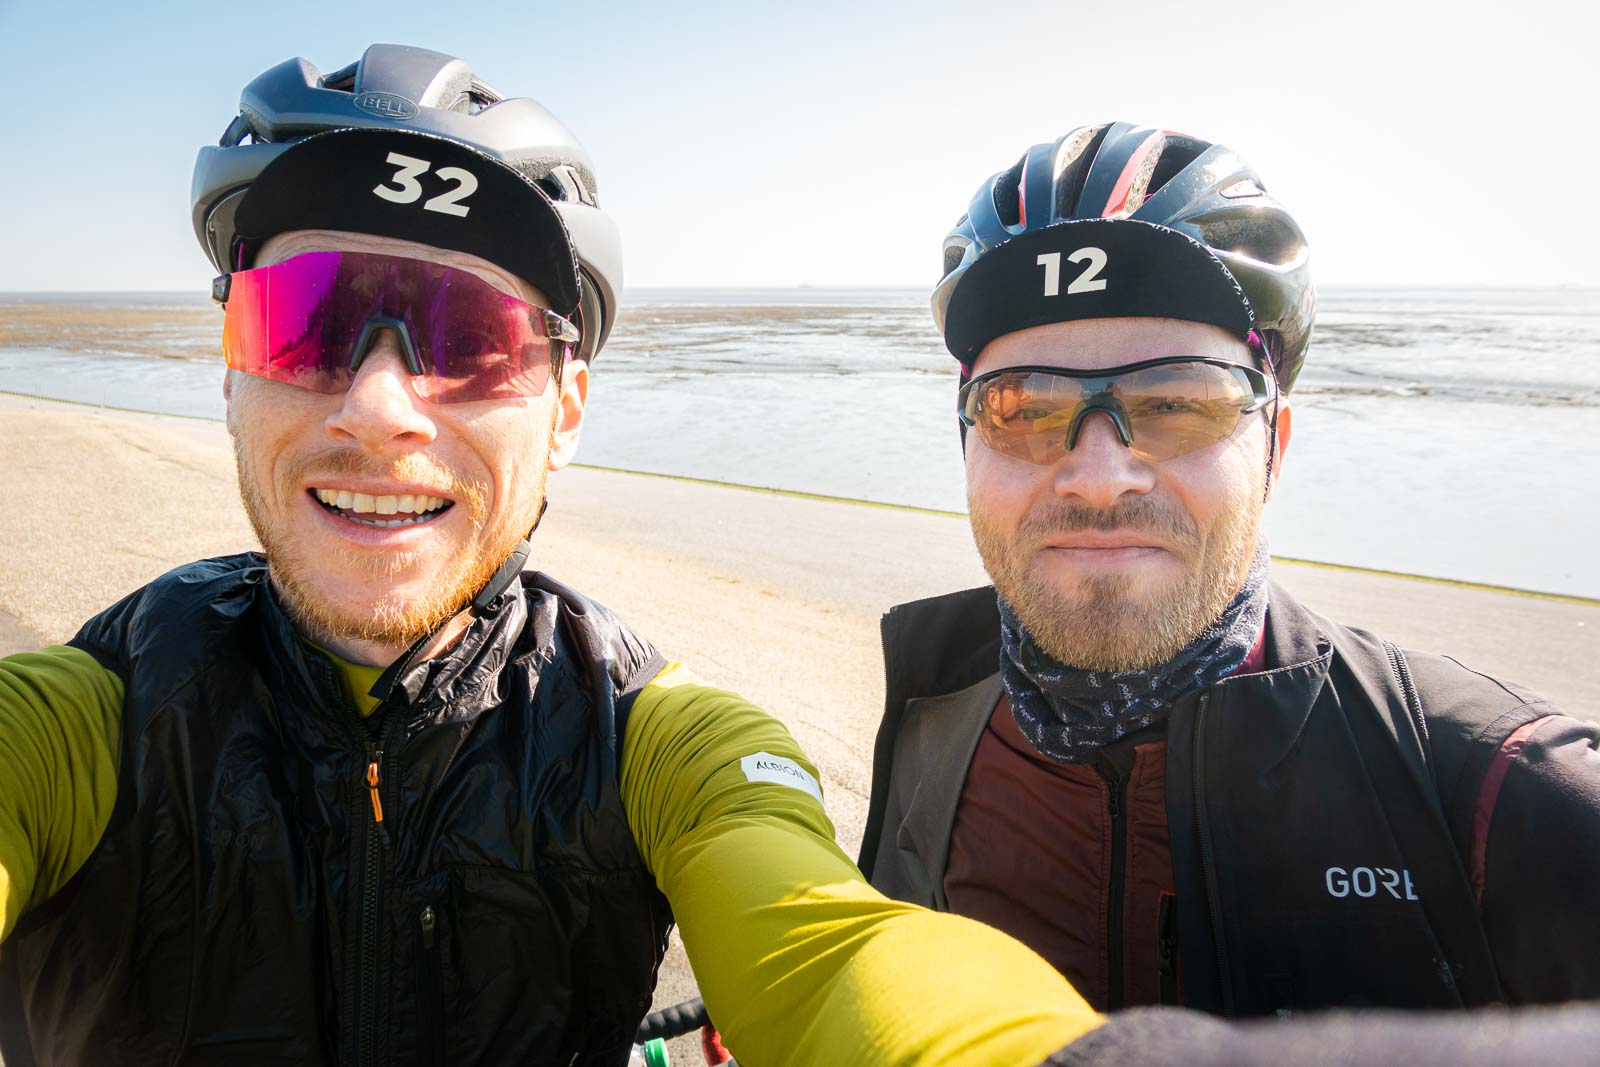 Zwei Radfahrer machen ein Selfie von sich während sie vor einem Strandpanorama stehen und lachen.